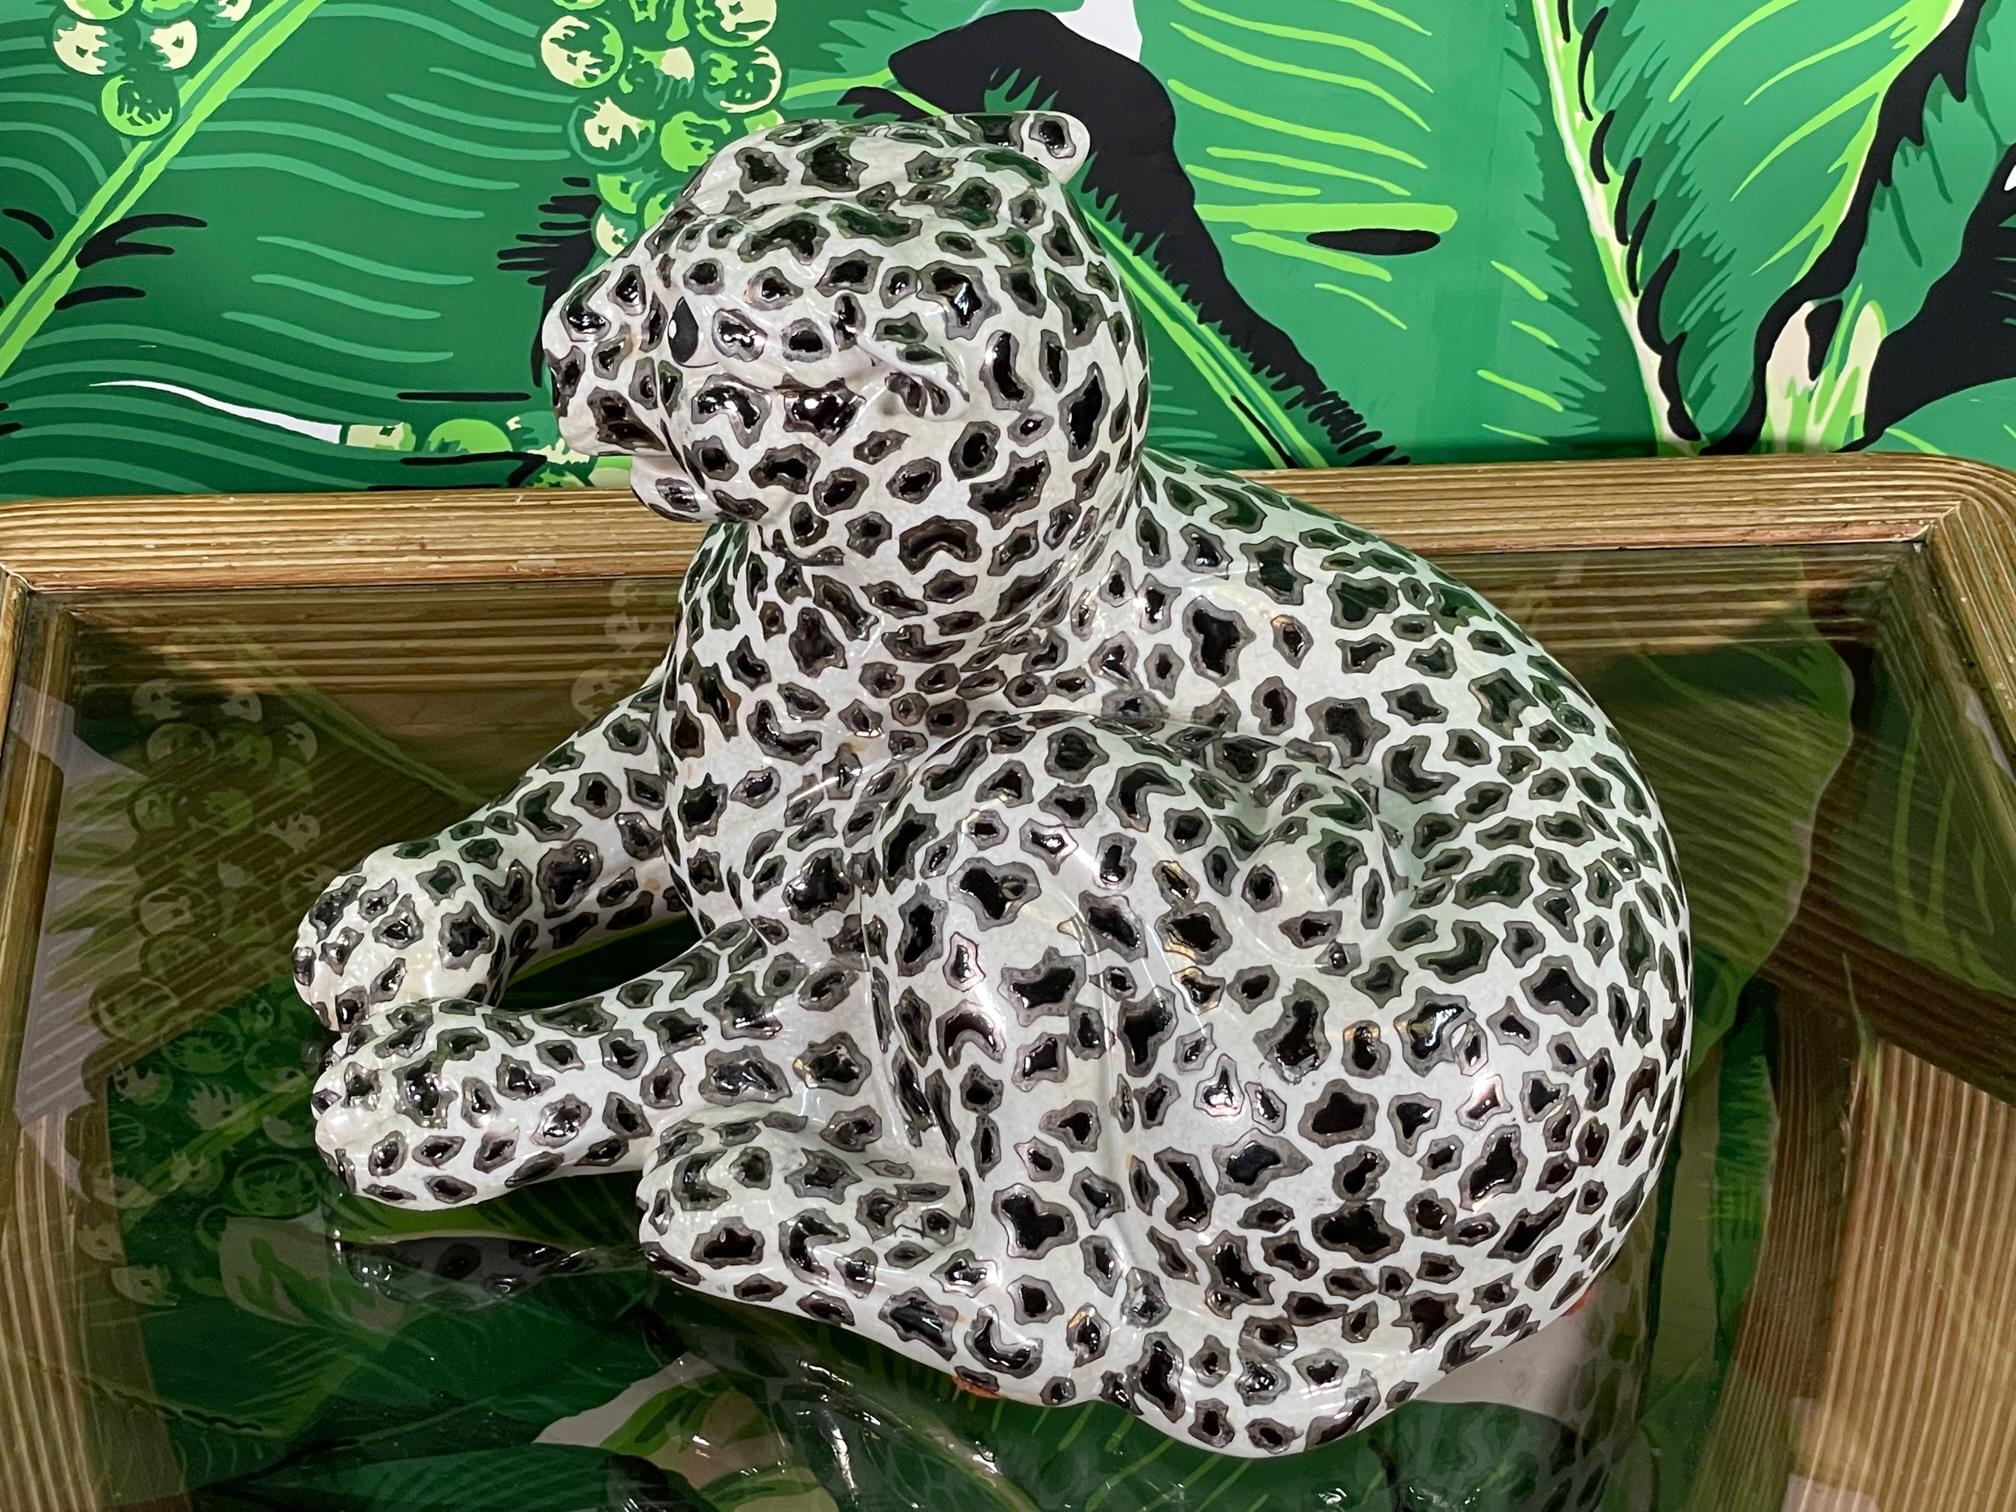 Leopardenfigur aus Porzellan mit silbernen Blattakzenten und glänzender Glasur. Gekennzeichnet mit 